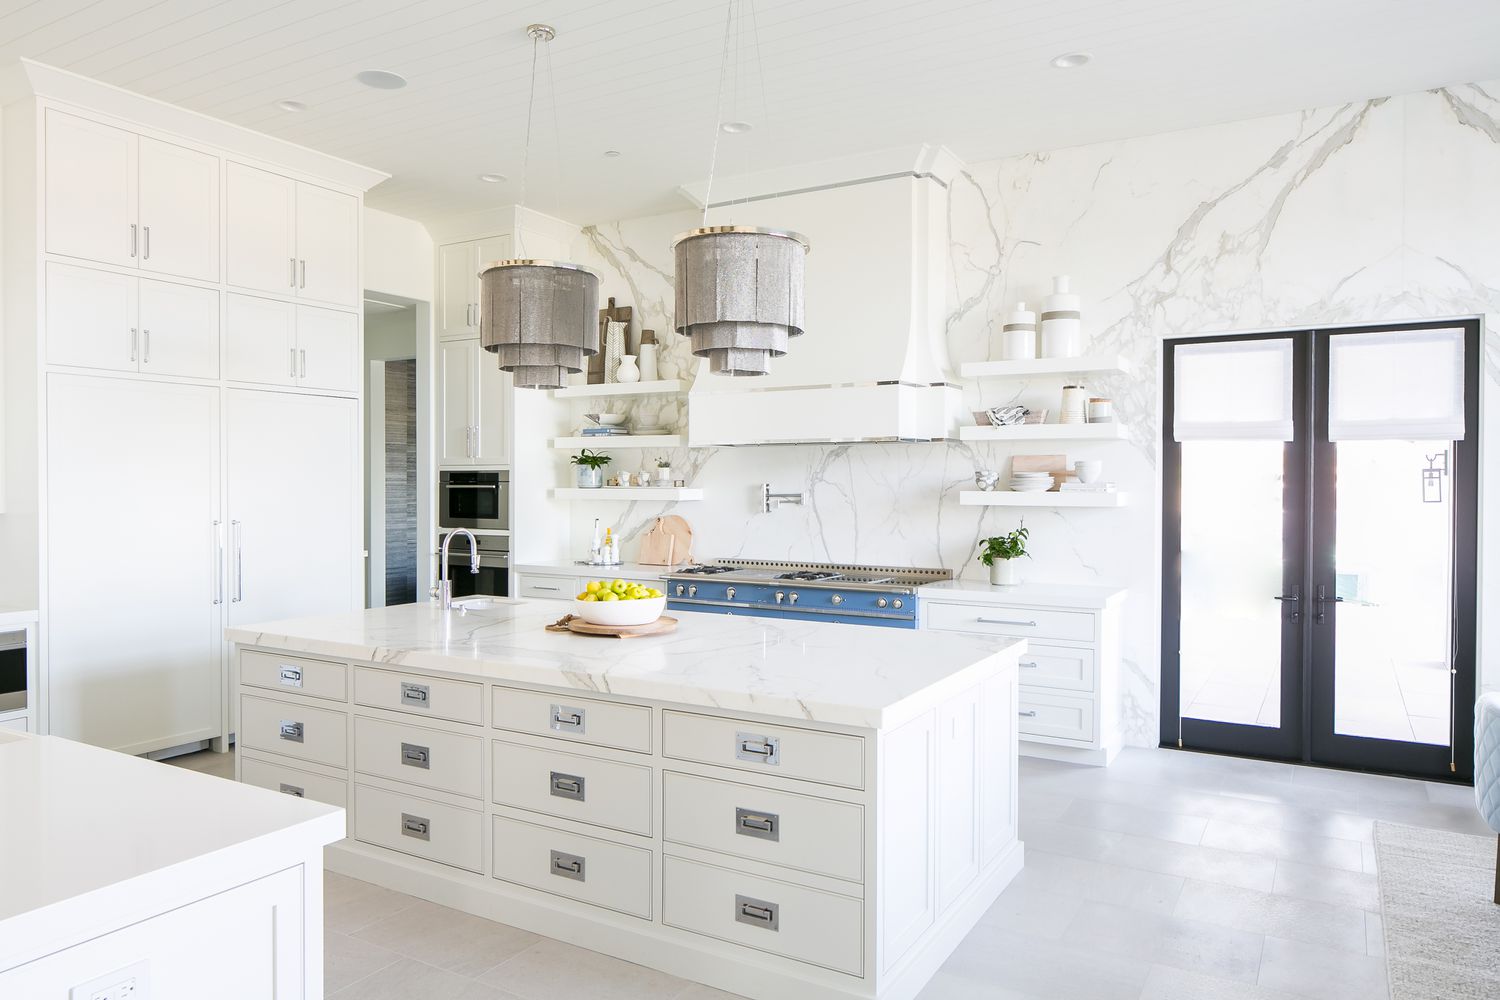 Cozinha aberta de mármore branco